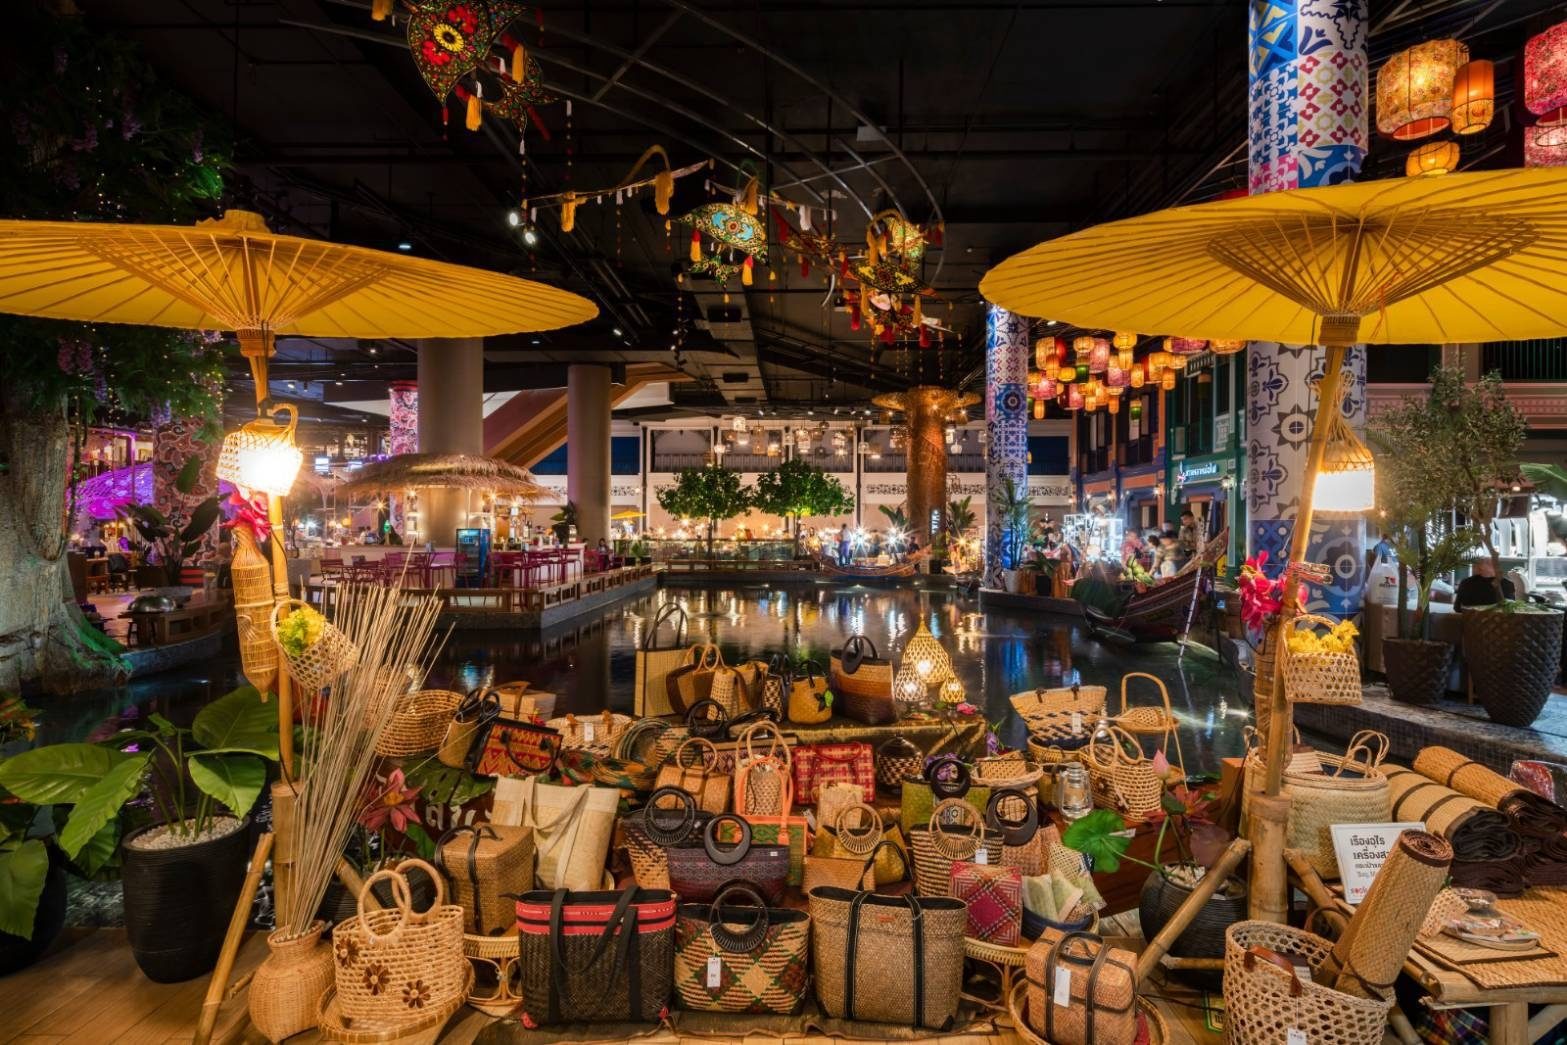 'ไทยช่วยไทย' สยามพิวรรธน์ เปิดพื้นที่ 'ตลาดฟื้นใจ' พ่อค้าแม่ค้าขายของได้ฟรี!!